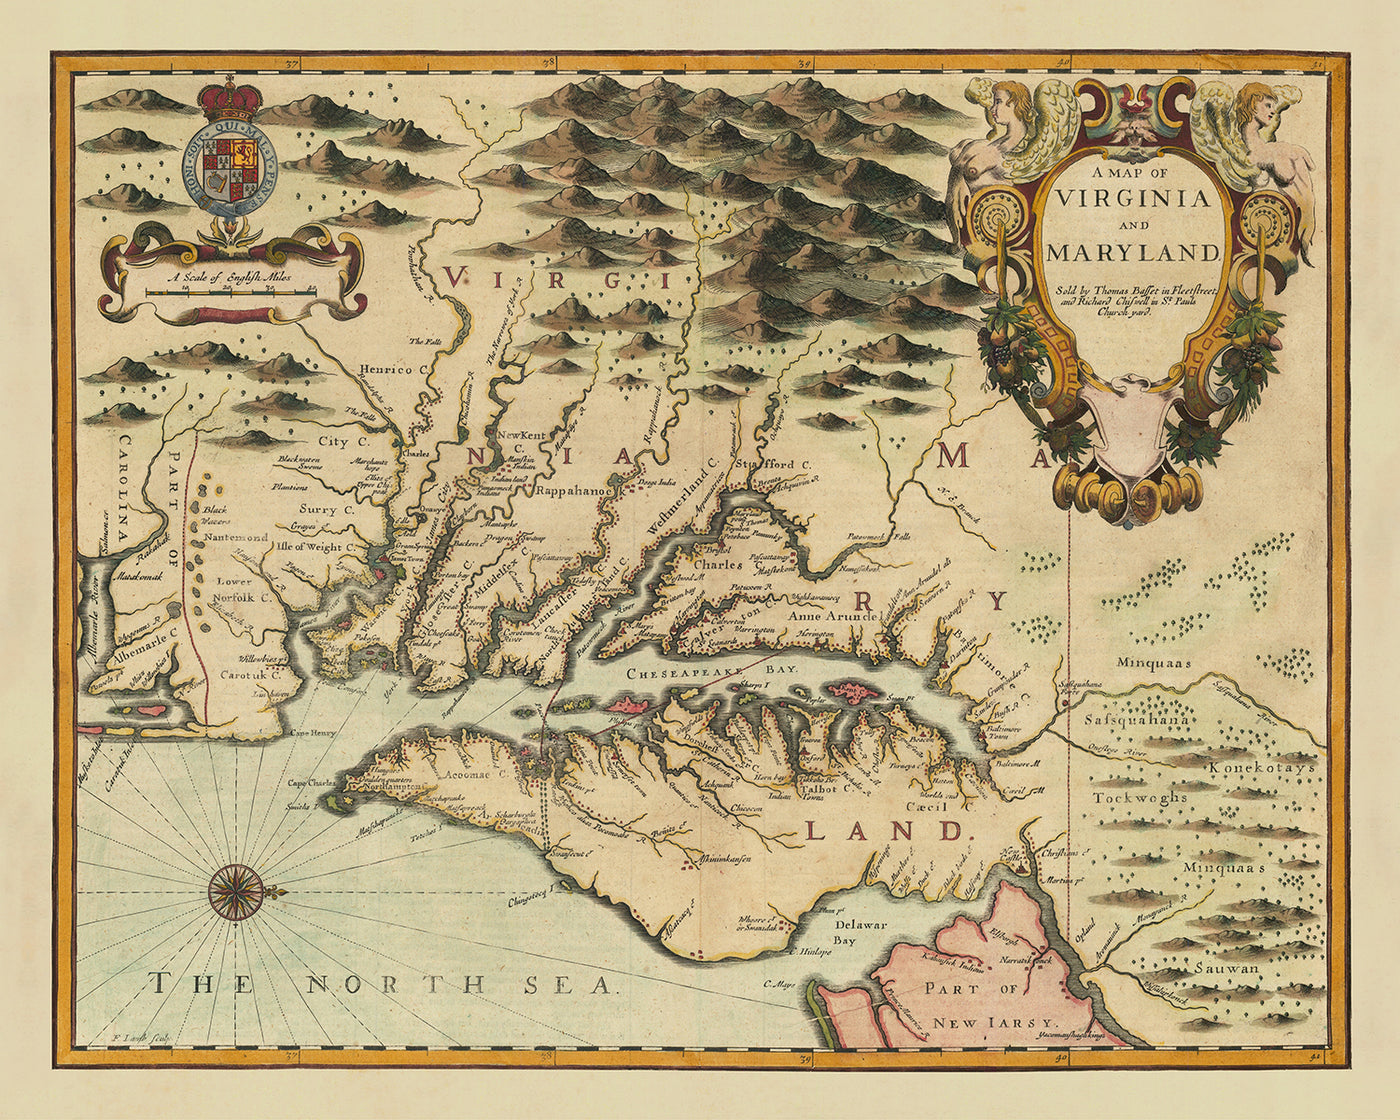 Alte Karte von Virginia und Maryland von John Speed, 1676: Jamestown, Yorktown, die Chesapeake Bay und die Mason-Dixon-Linie